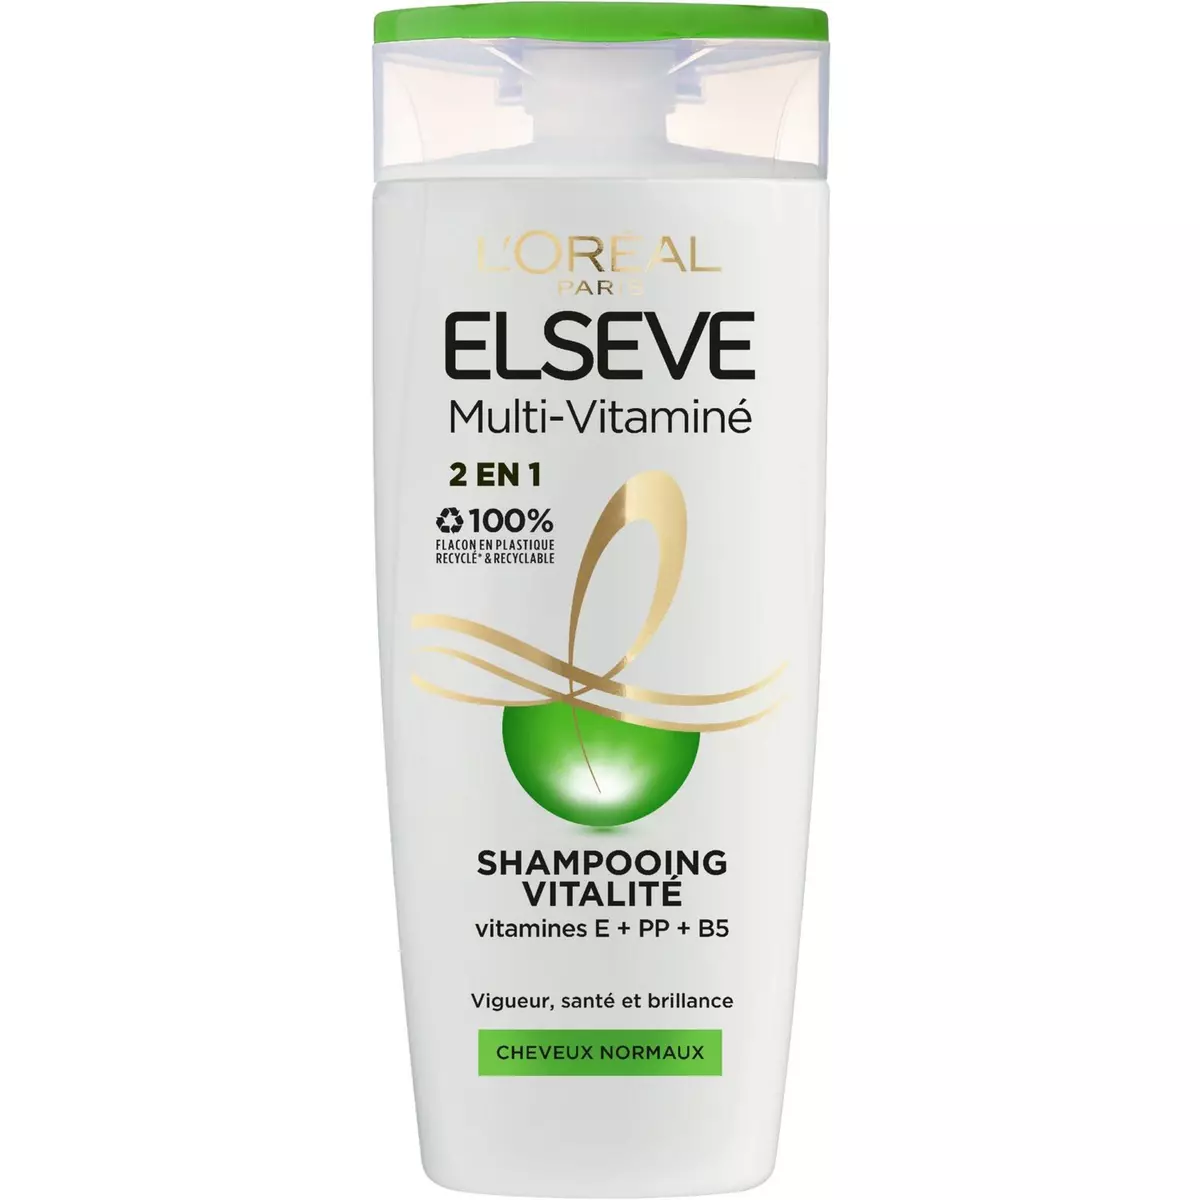 ELSEVE Multi-Vitaminé Shampooing vitalité 2en1 cheveux normaux 290ml